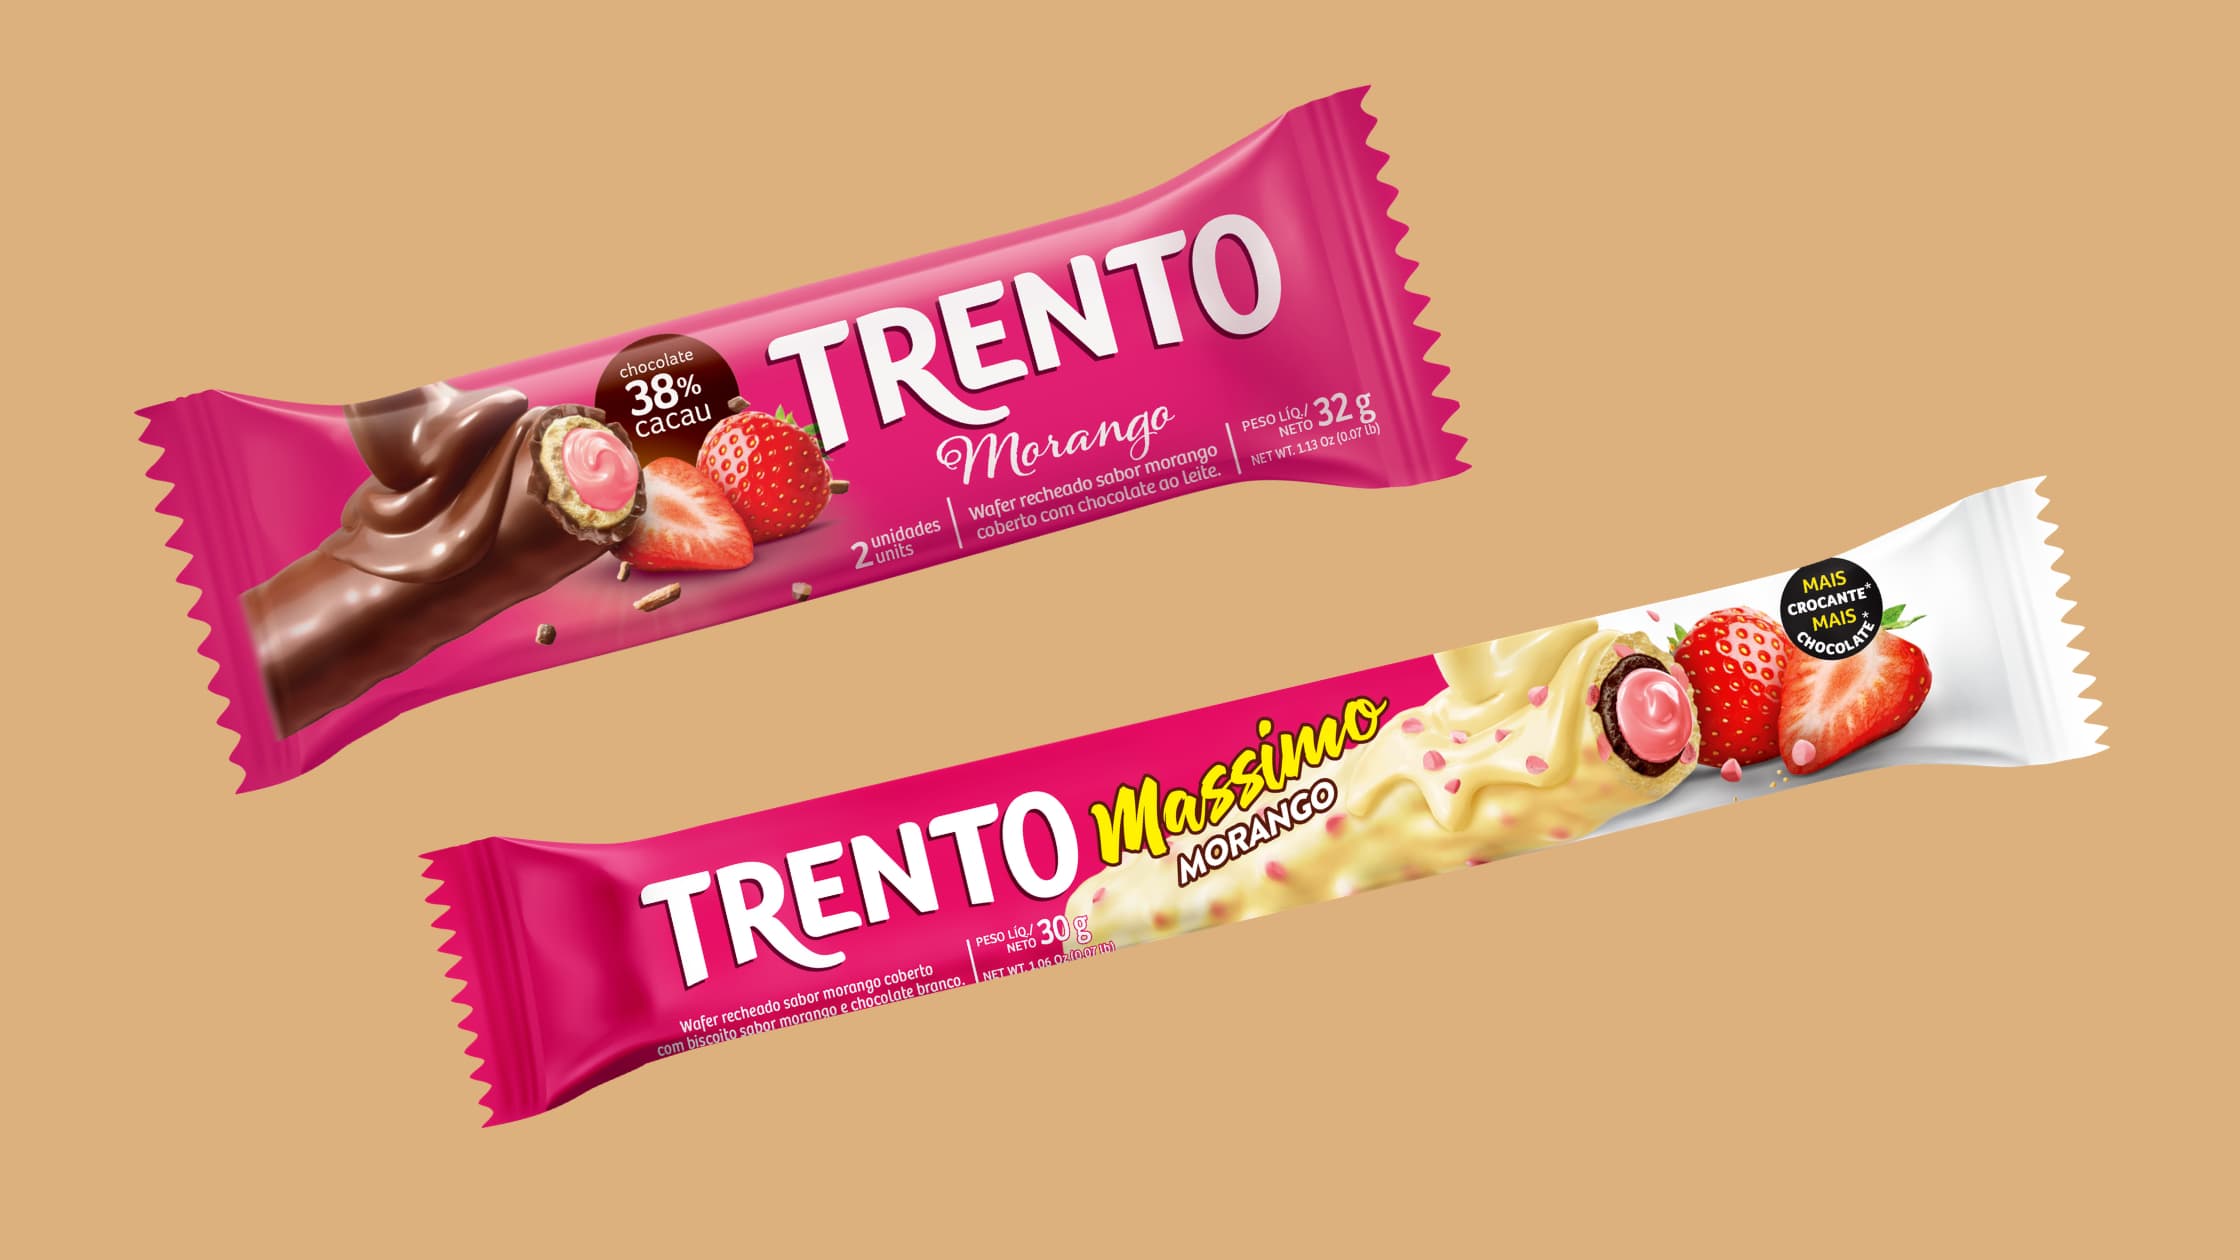 Trento e Trento Massimo ganham o sabor chocolate com morango